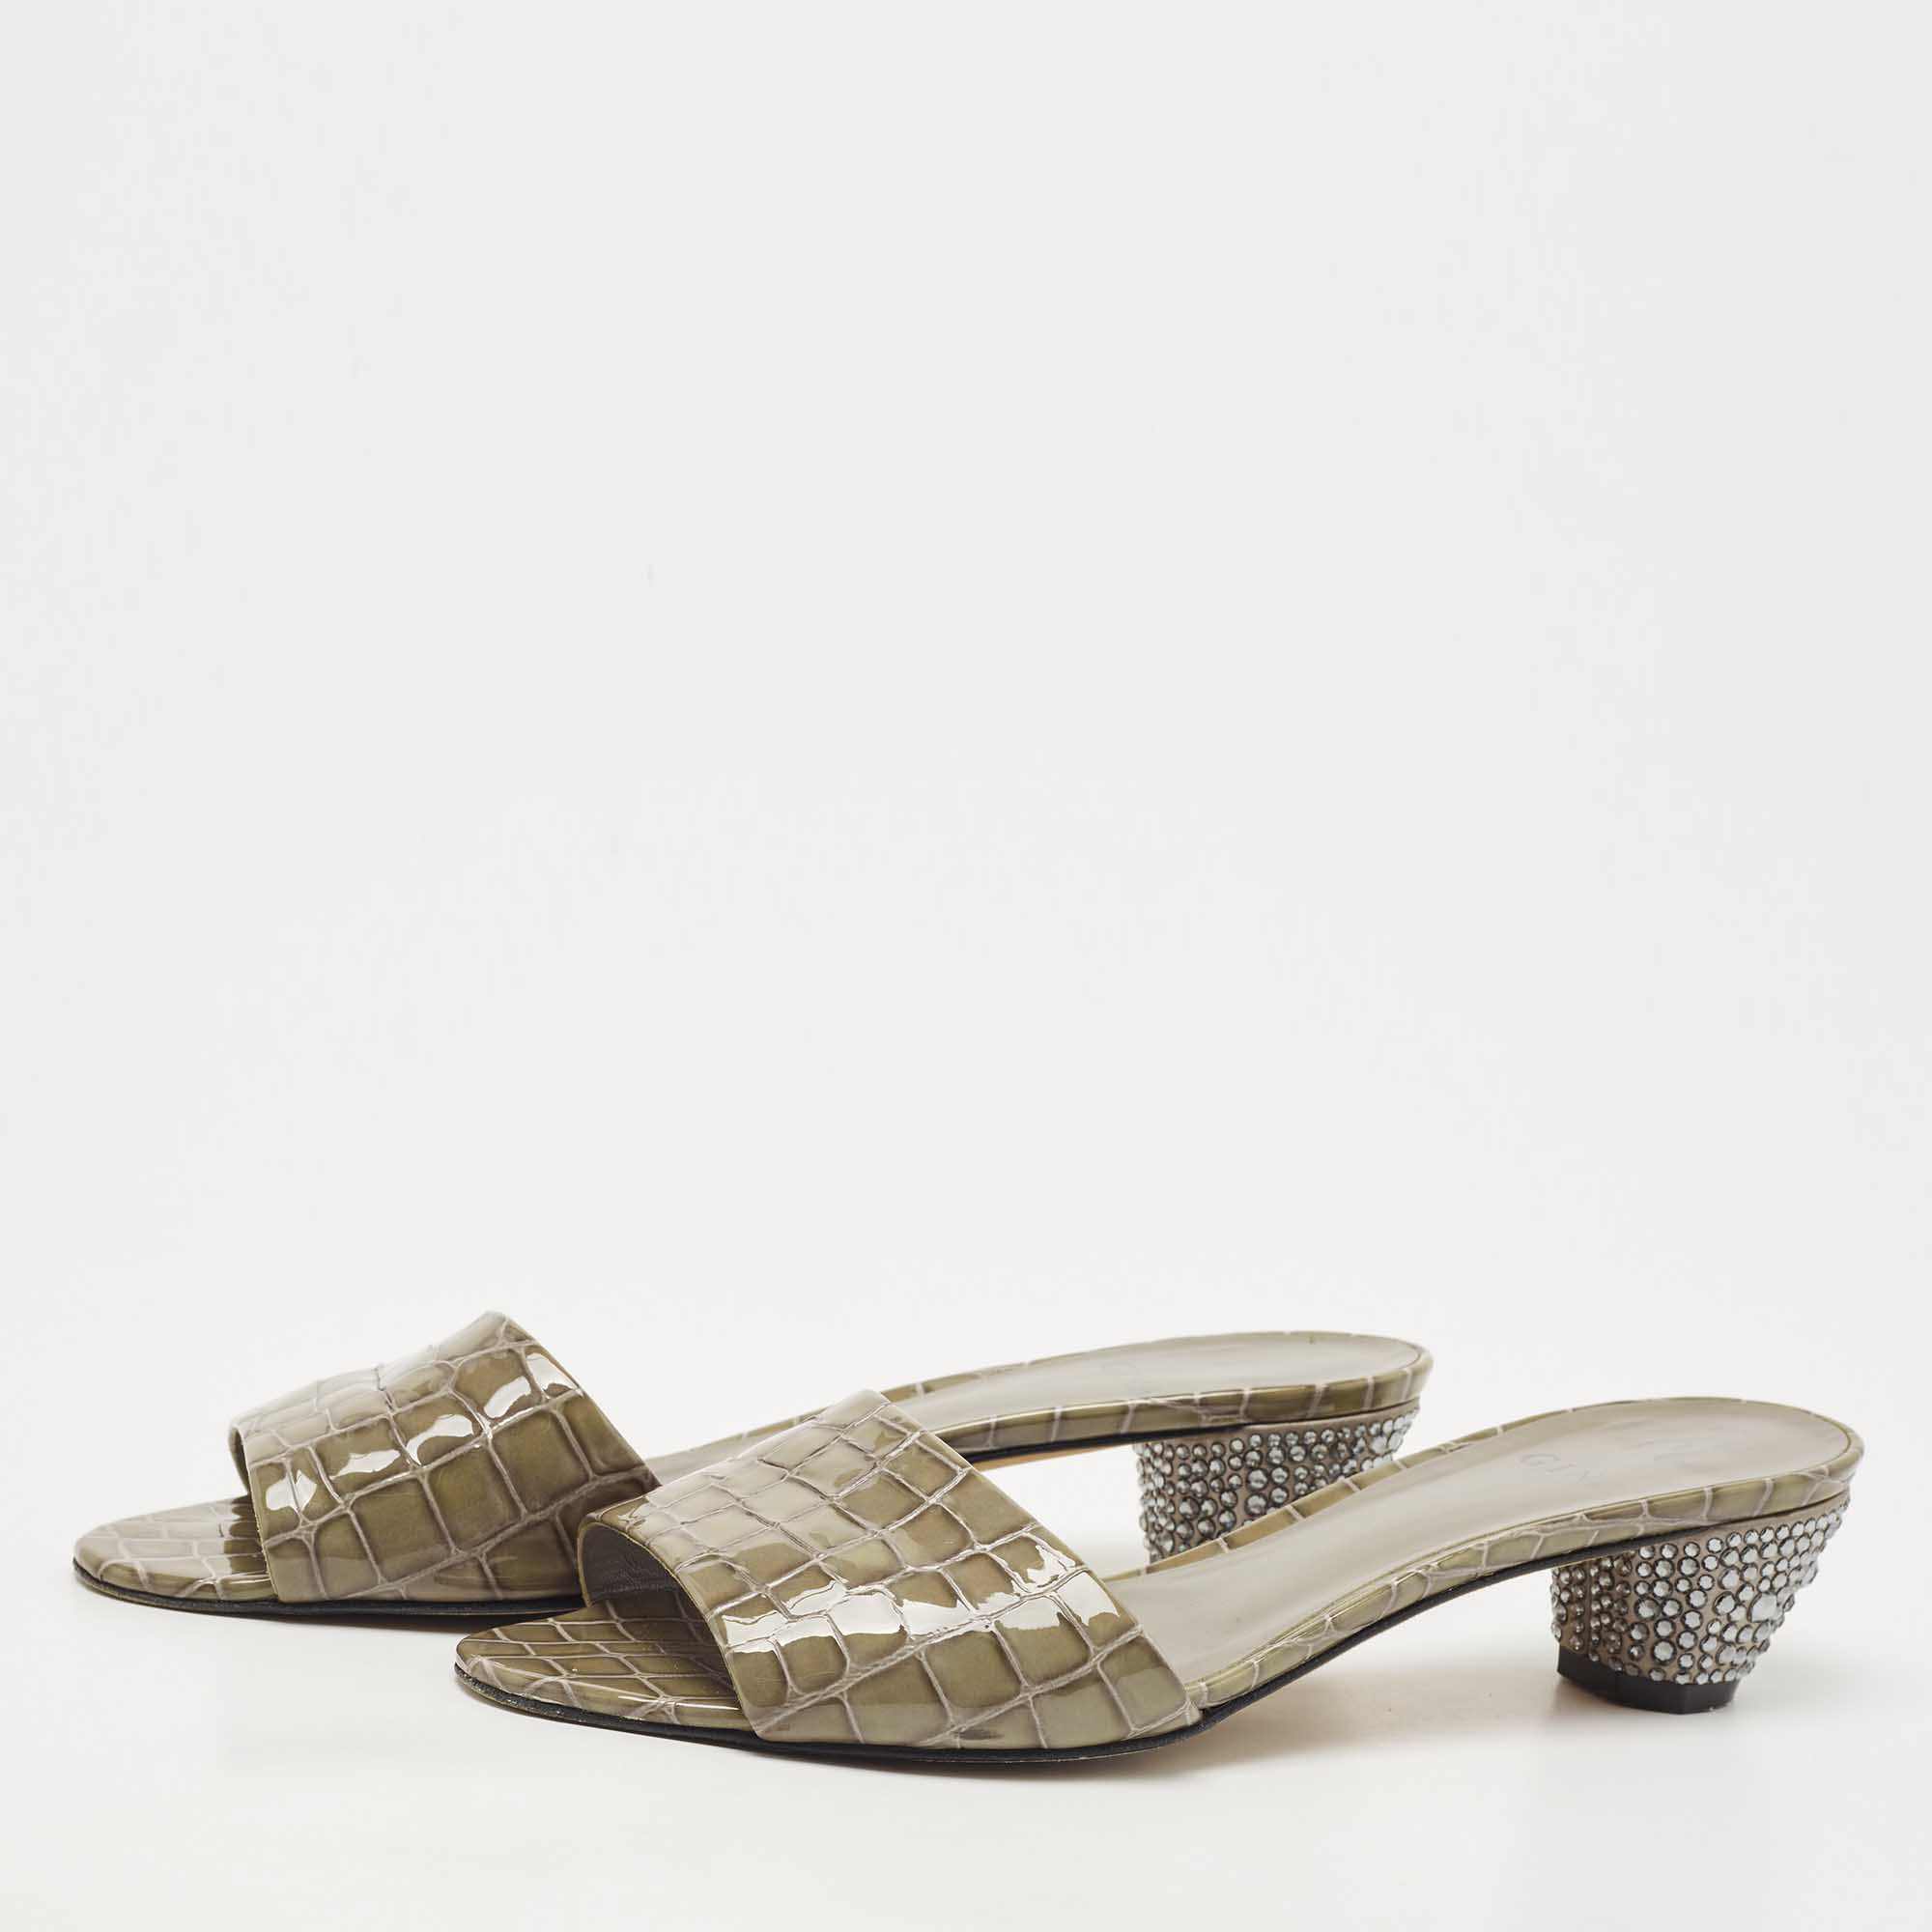 

Gina Olive Green Croc Embossed Patent Leather Crystal Embellished Slide Sandals Size